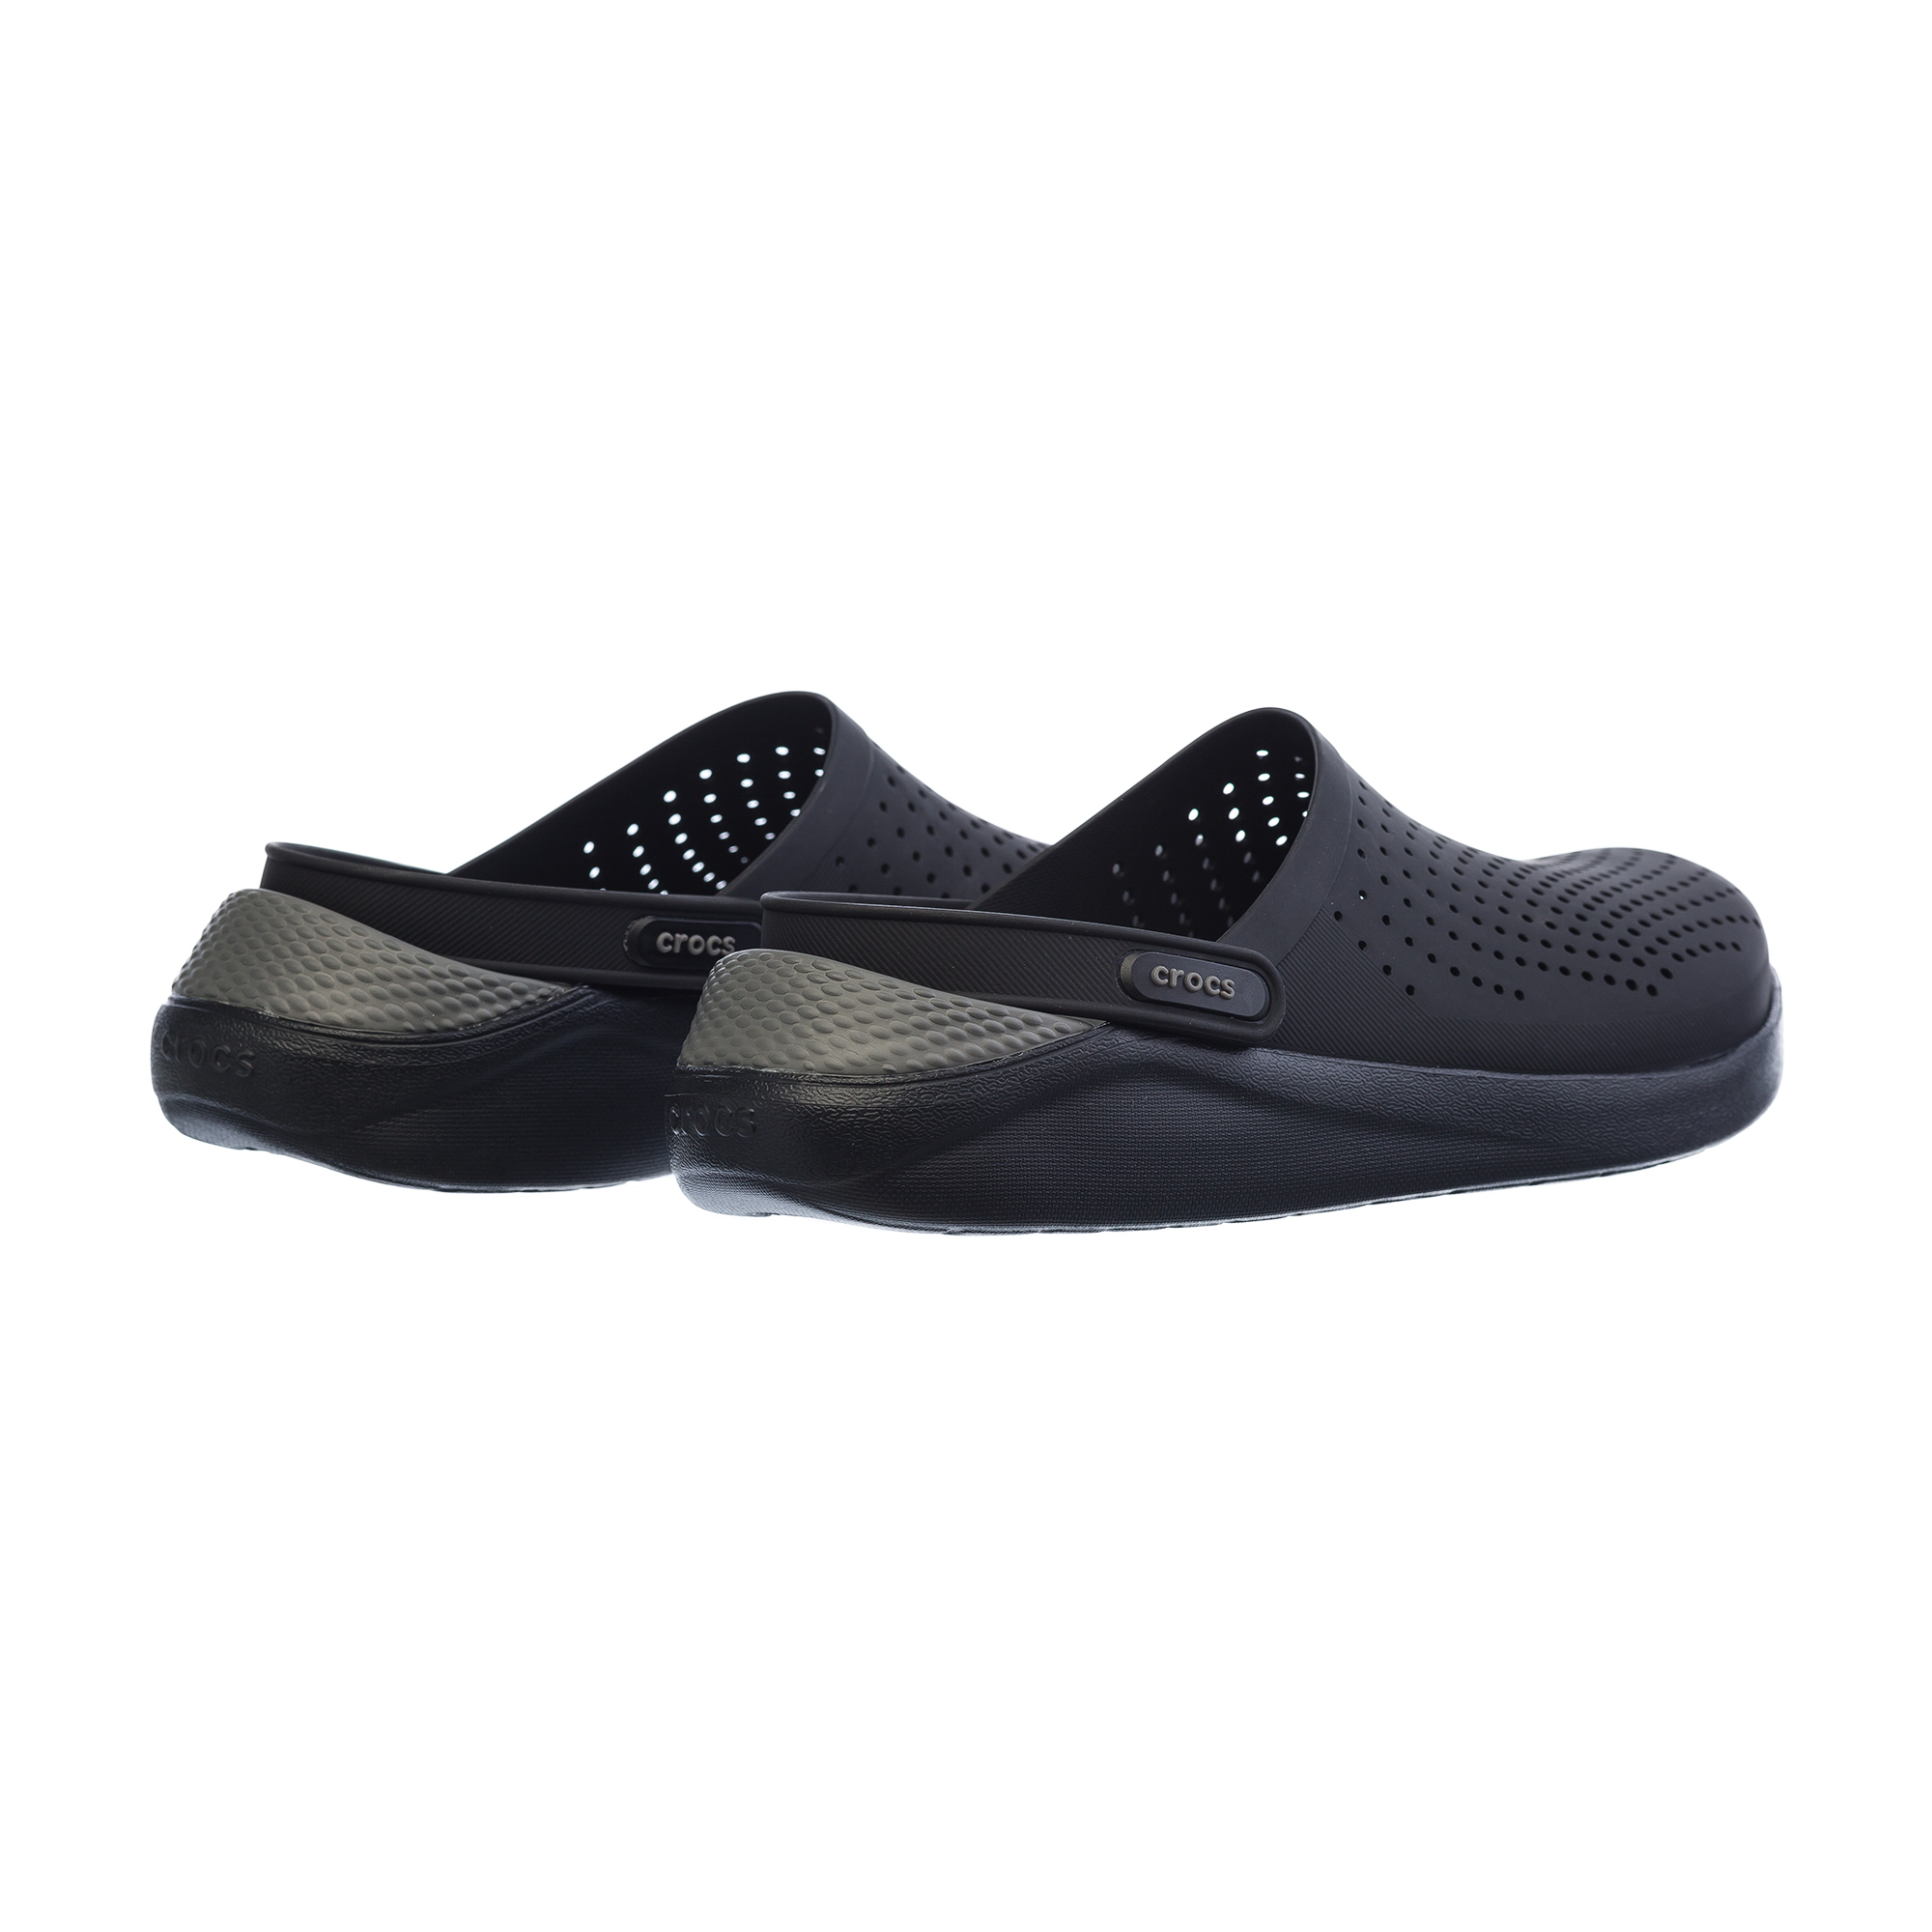 LiteRide Clog Crocs, размер 39-40, цвет черный CR204592 - фото 3